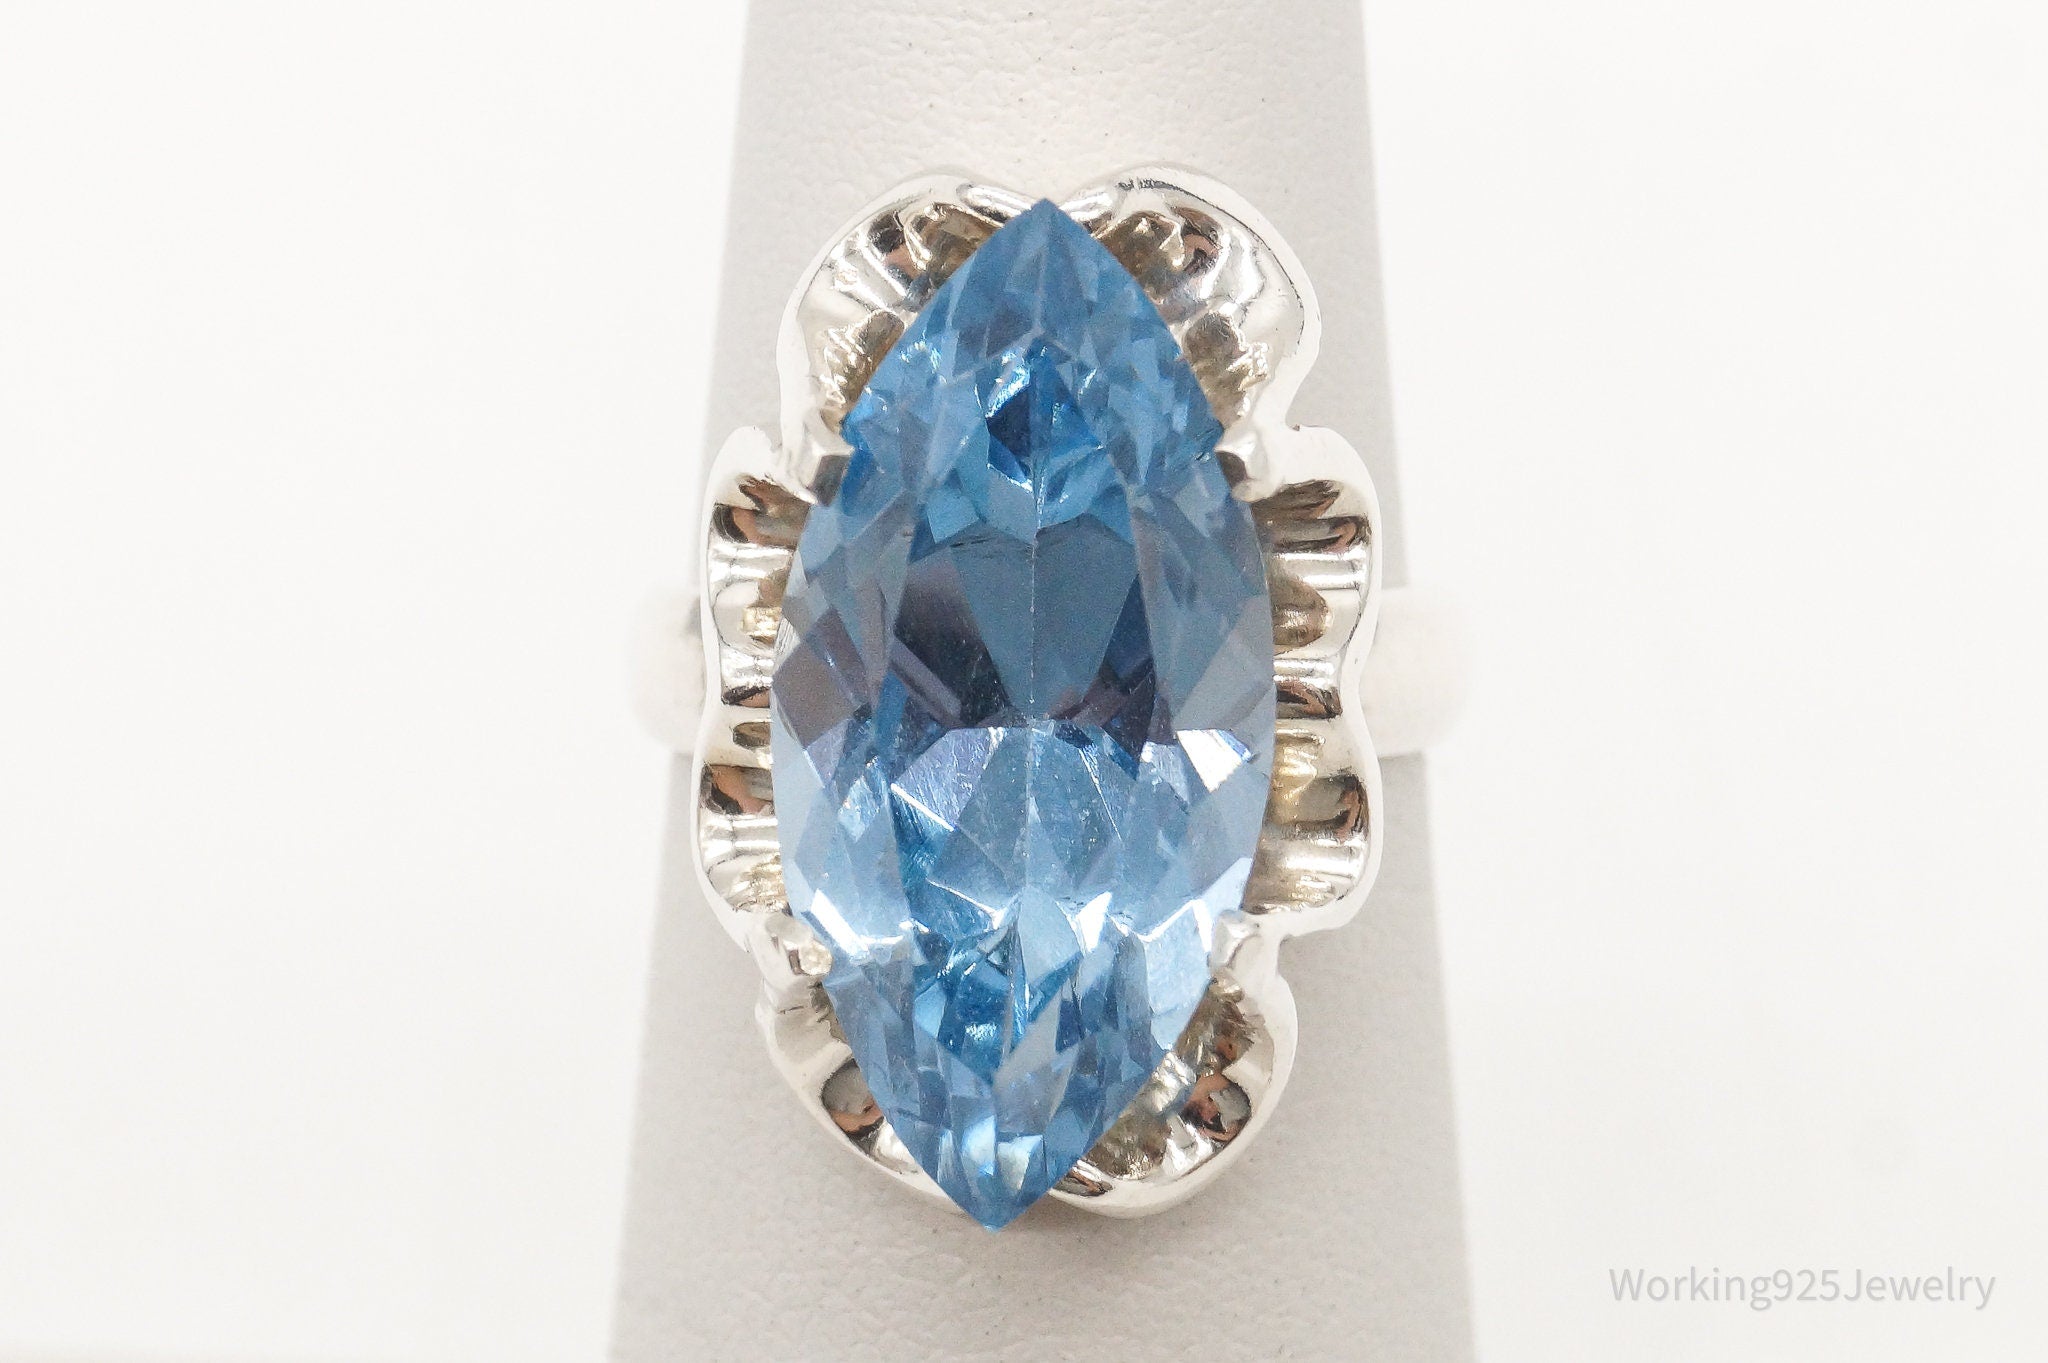 Vintage Large Blue Topaz Sterling Silver Ring - Size 4.5